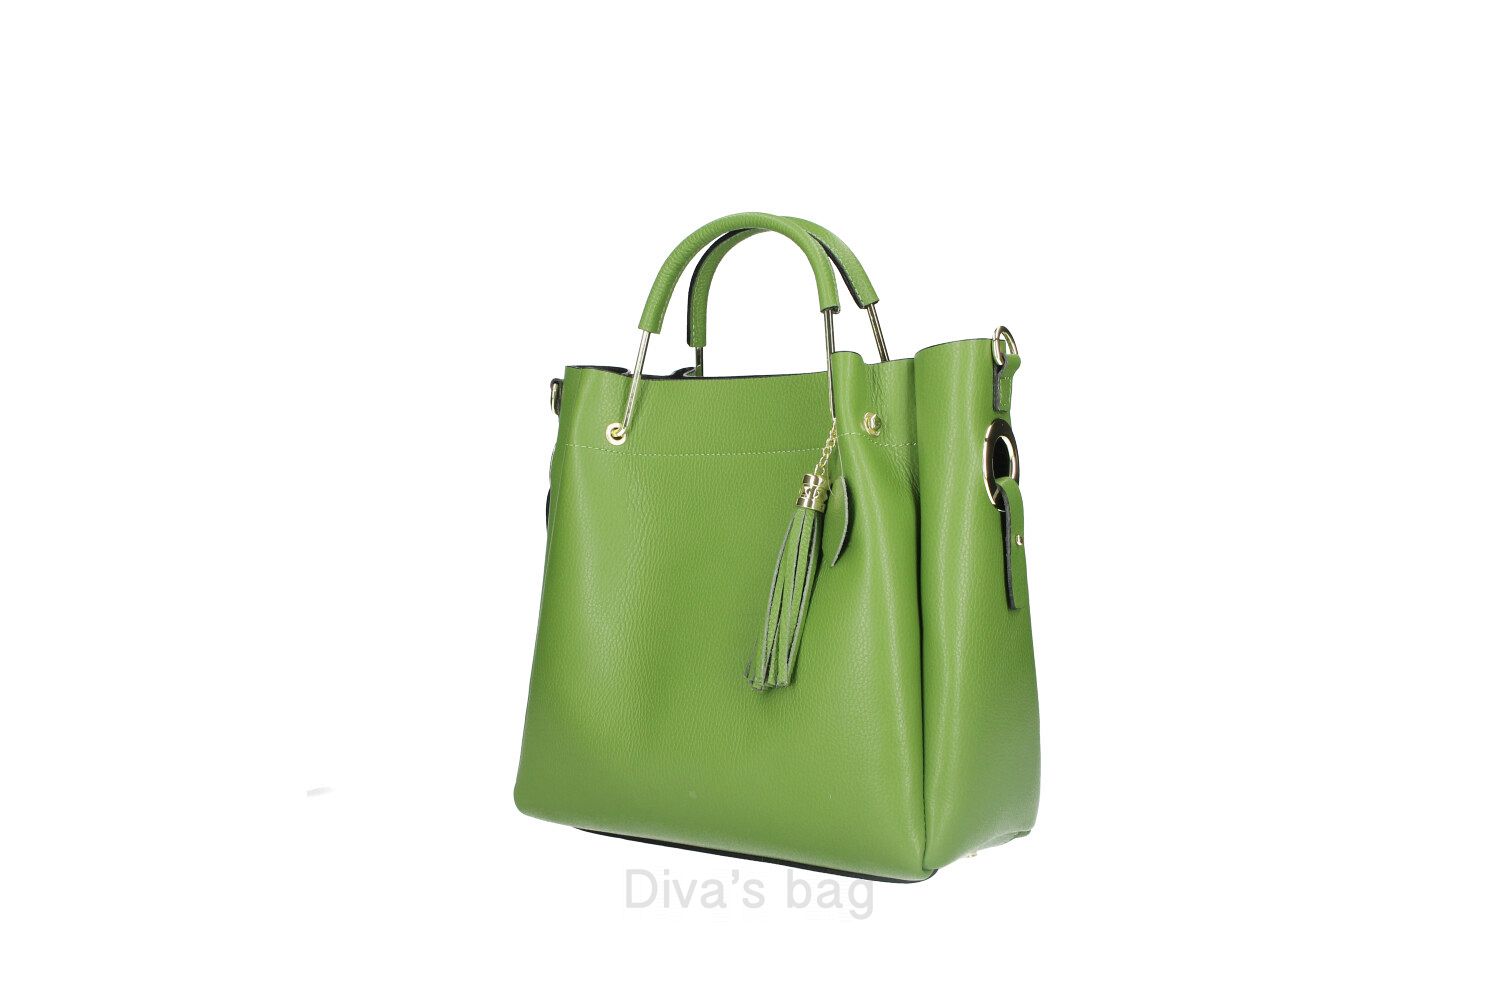 Wanda - Maxi Leather Handbag Dollaro